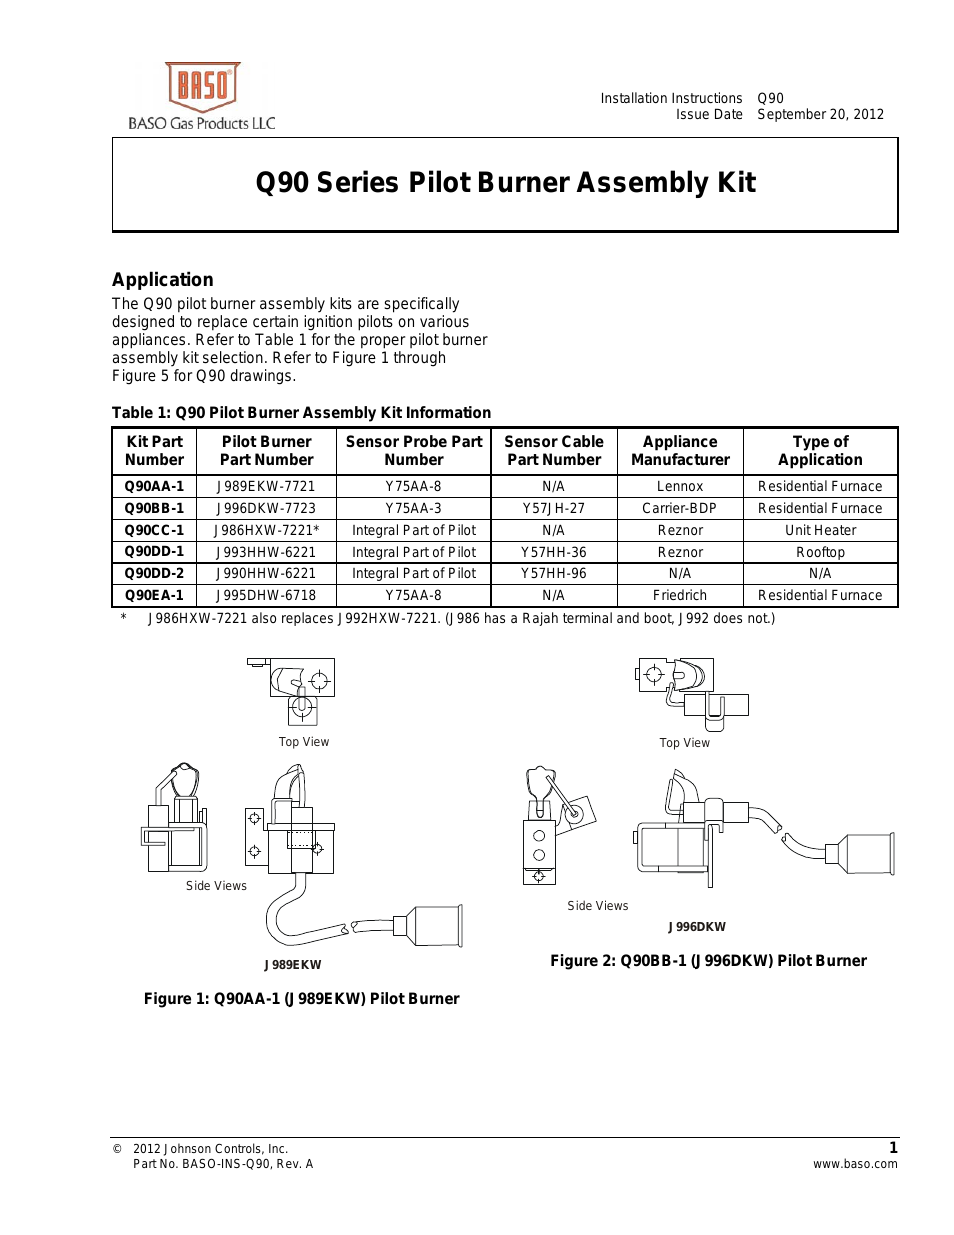 Q90 Series